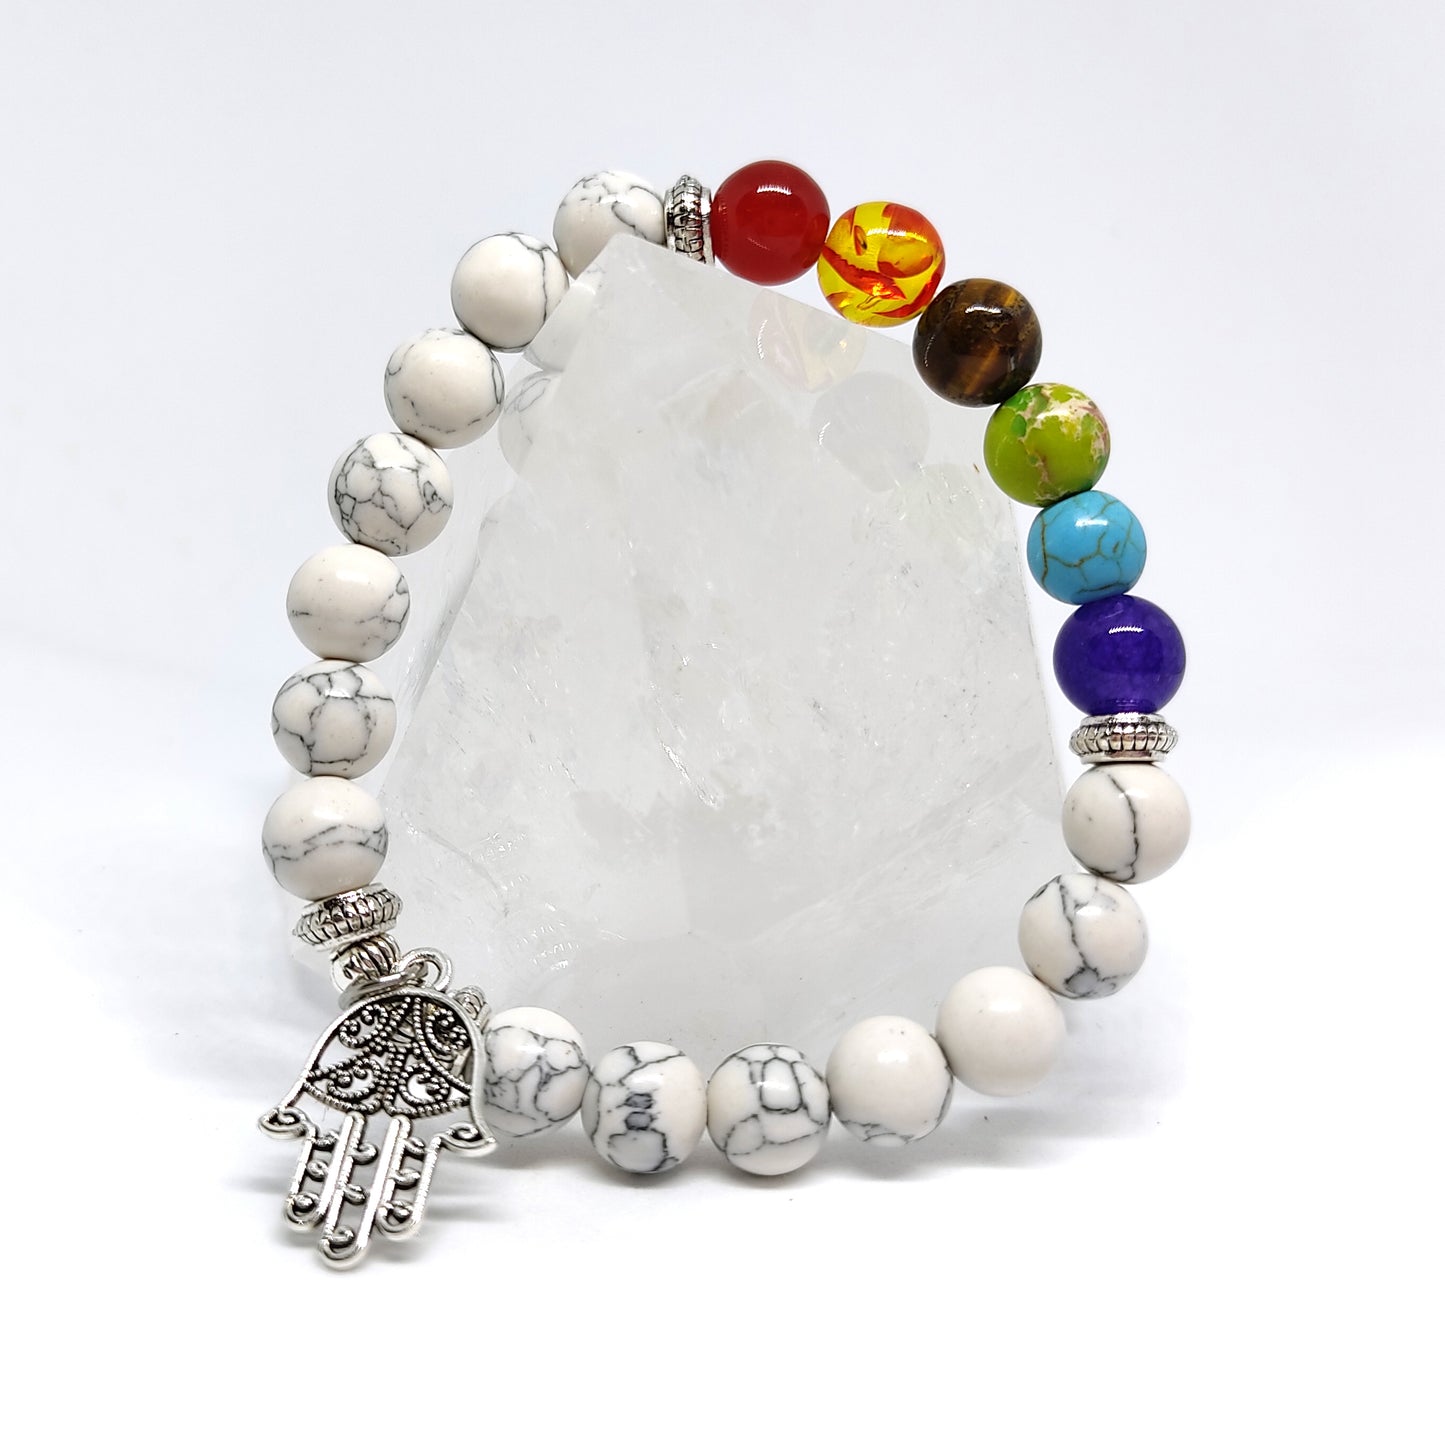 Howlite Chakra Bracelet 8mm Beads - Gemstone Jewelry with Silver Hamsa Charm